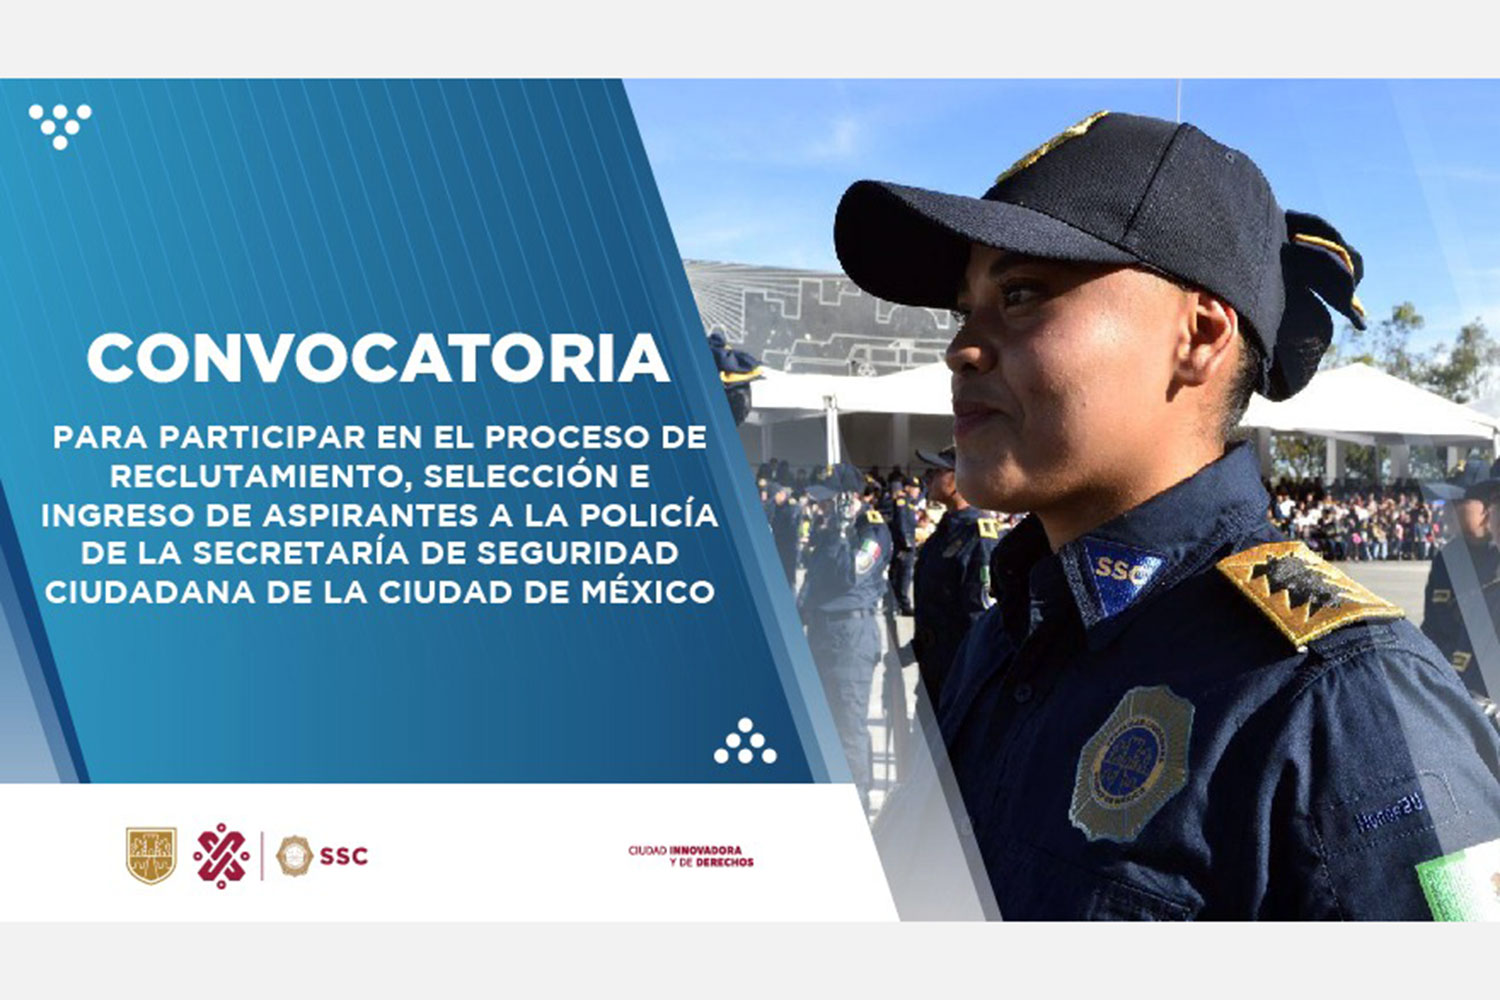 Convocatoria de reclutamiento de la Policía de la Ciudad de México